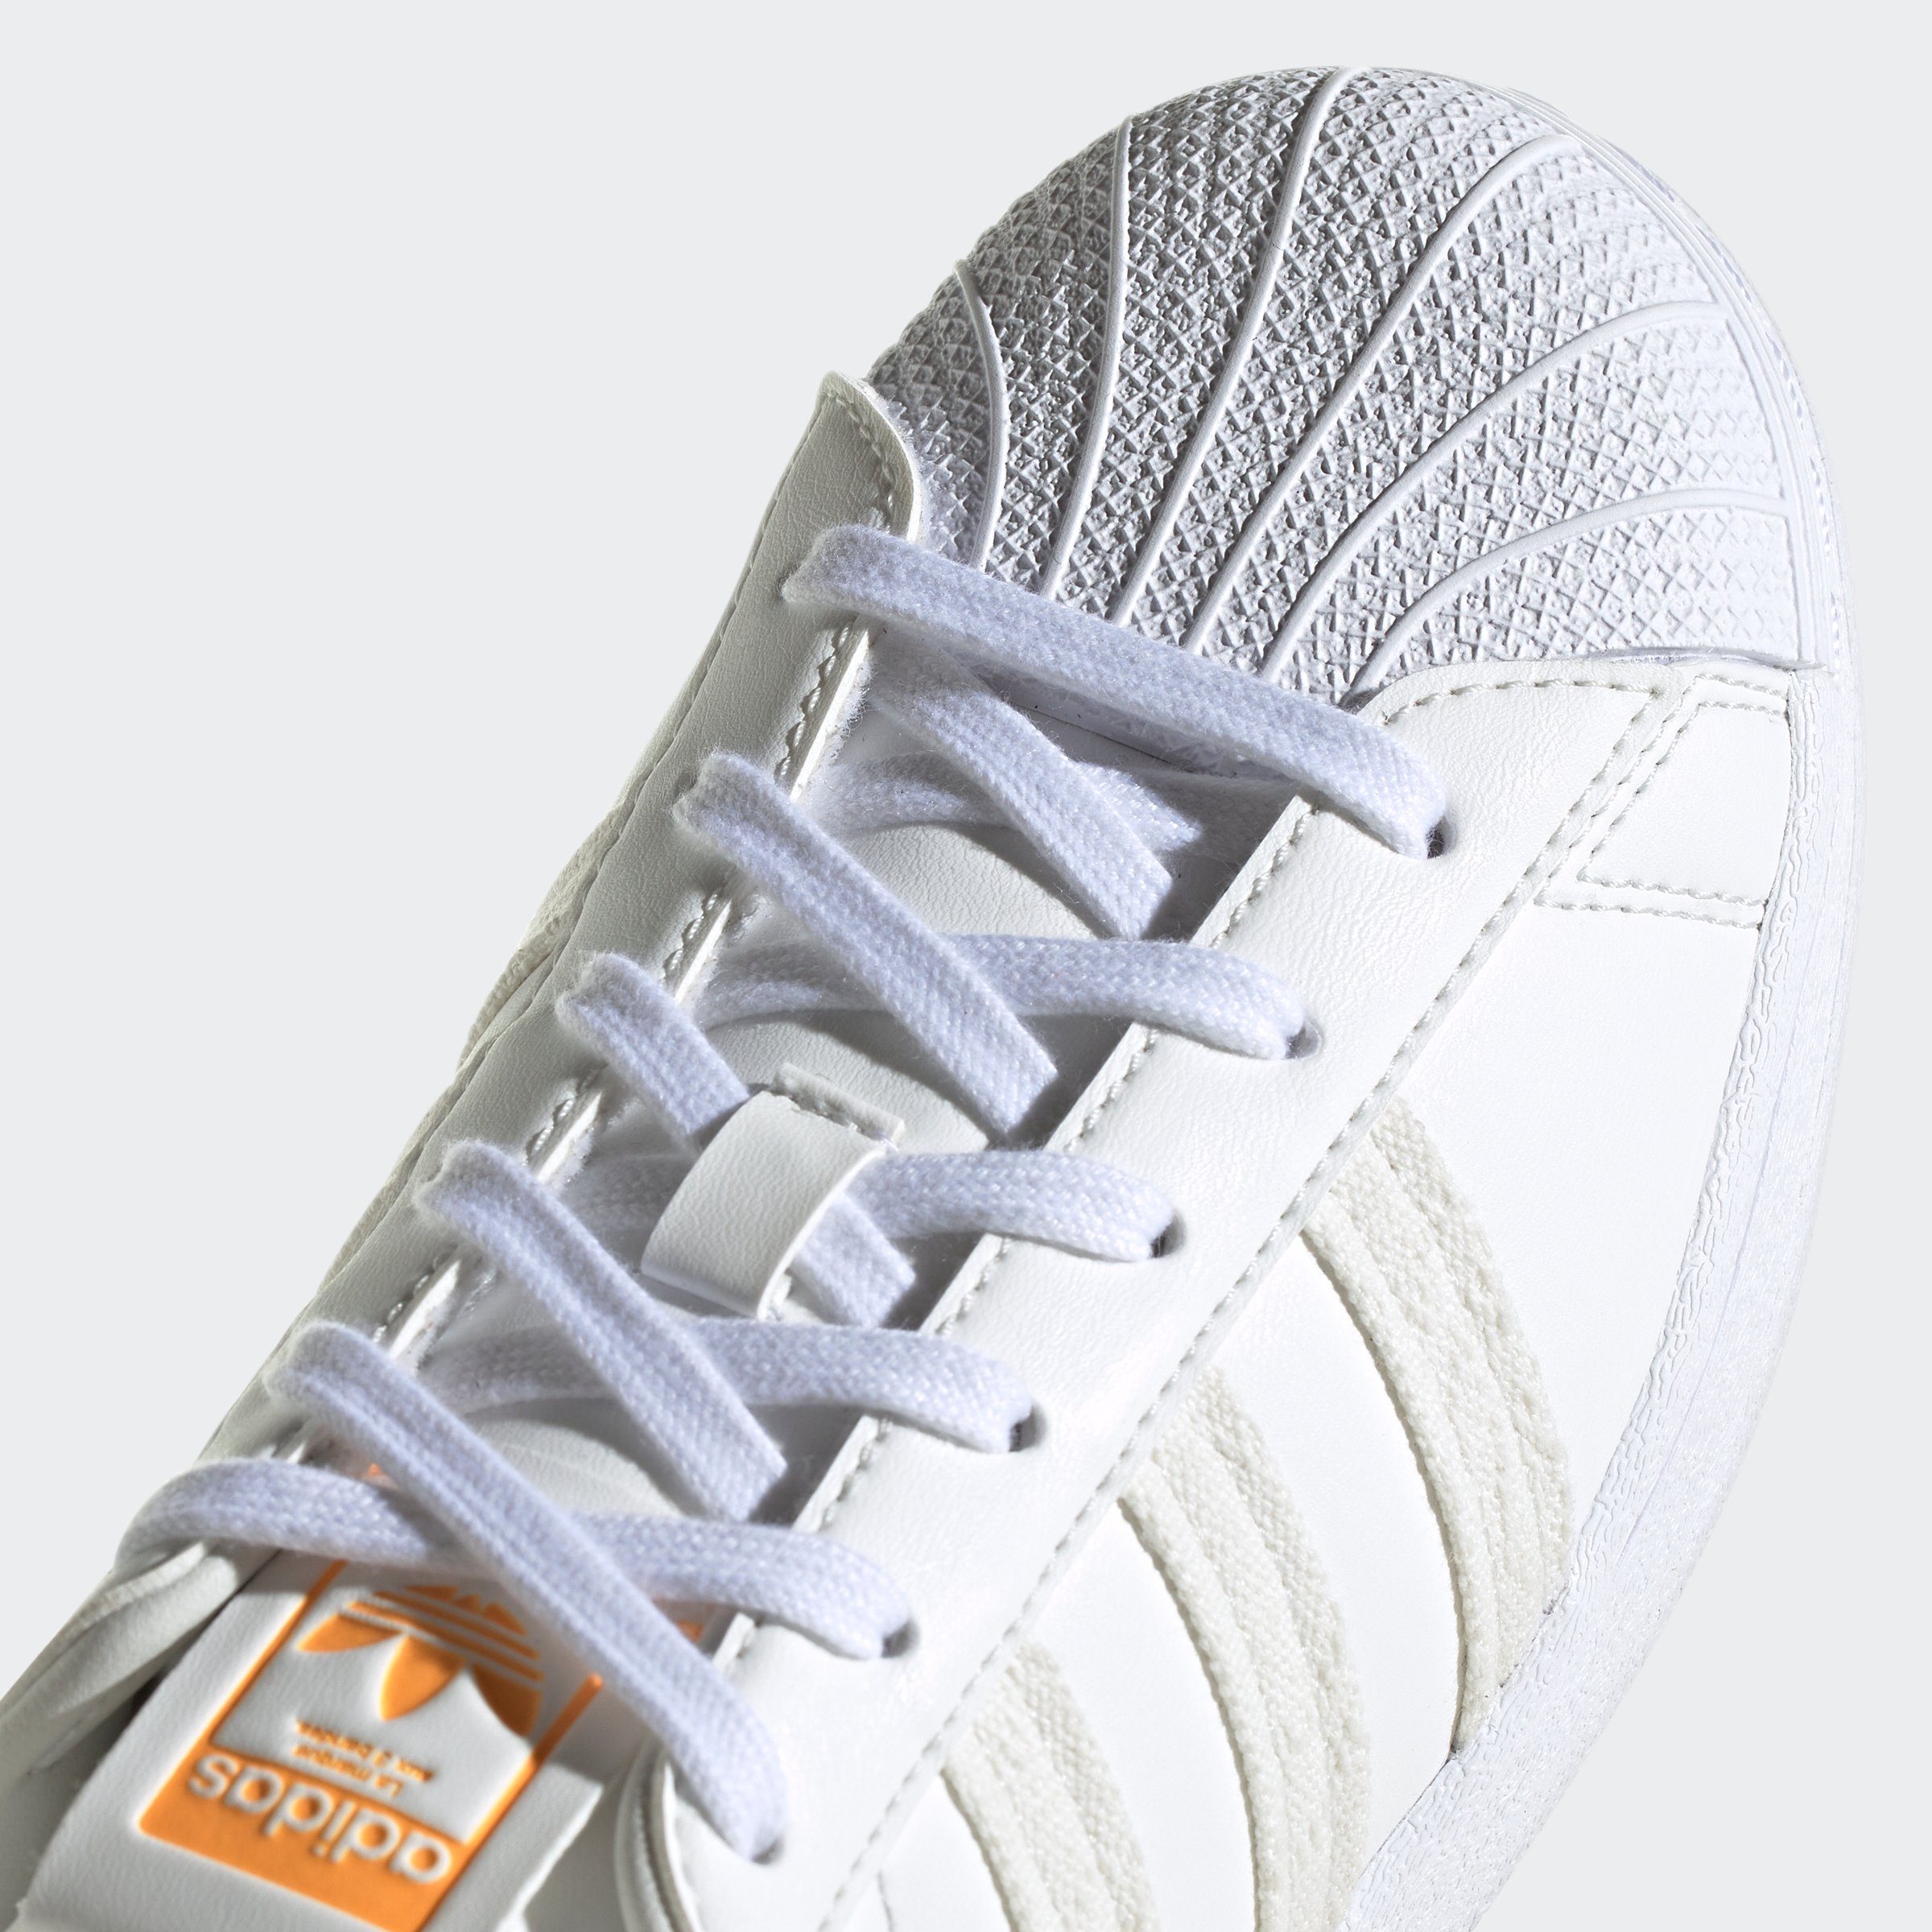 Originals weiß-hellorange SUPERSTAR W Sneaker adidas